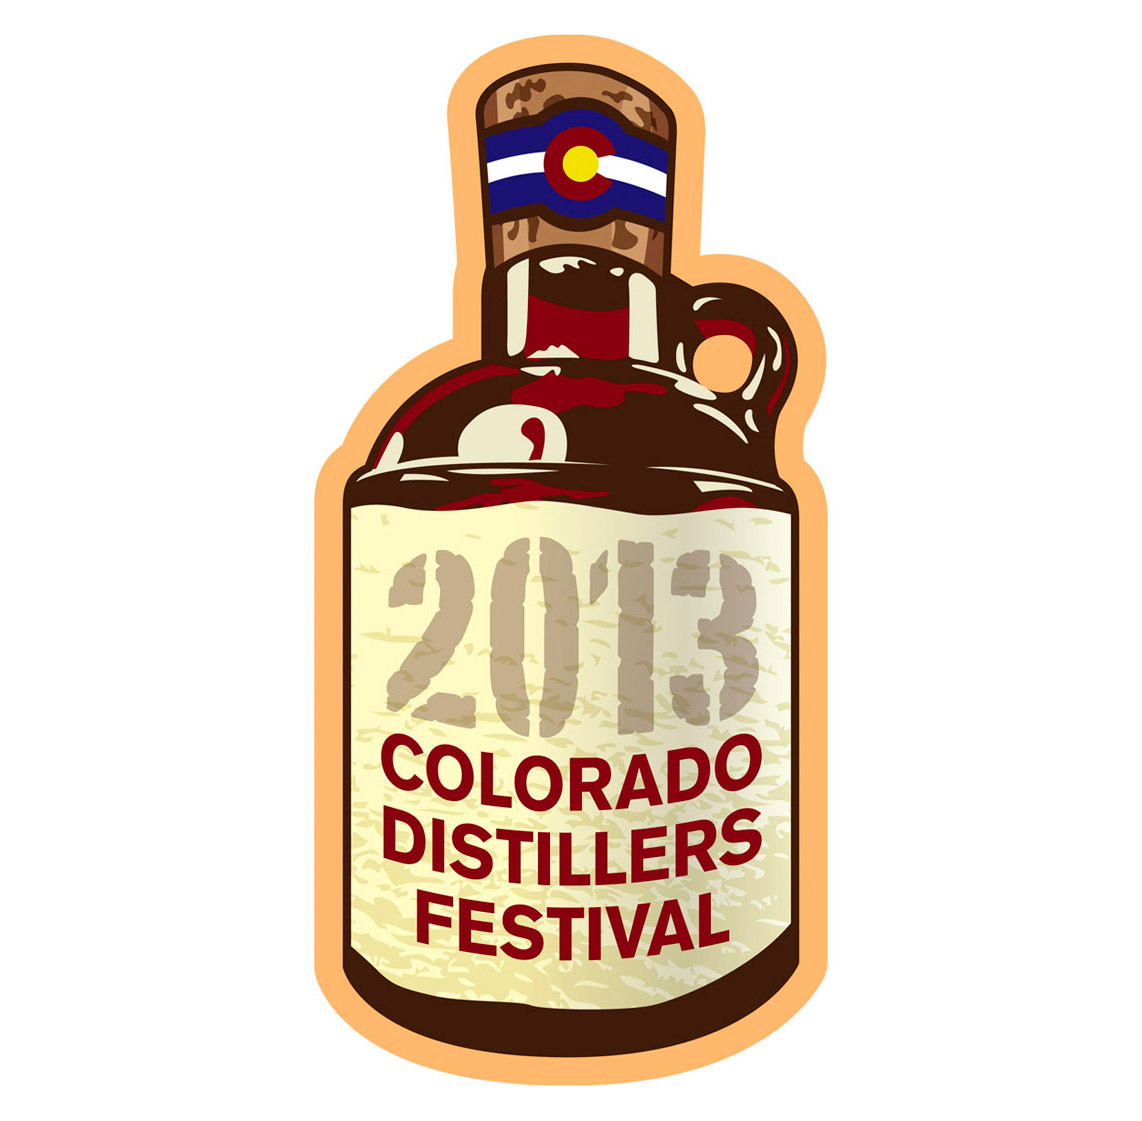 Colorado Distillers Festival Branding